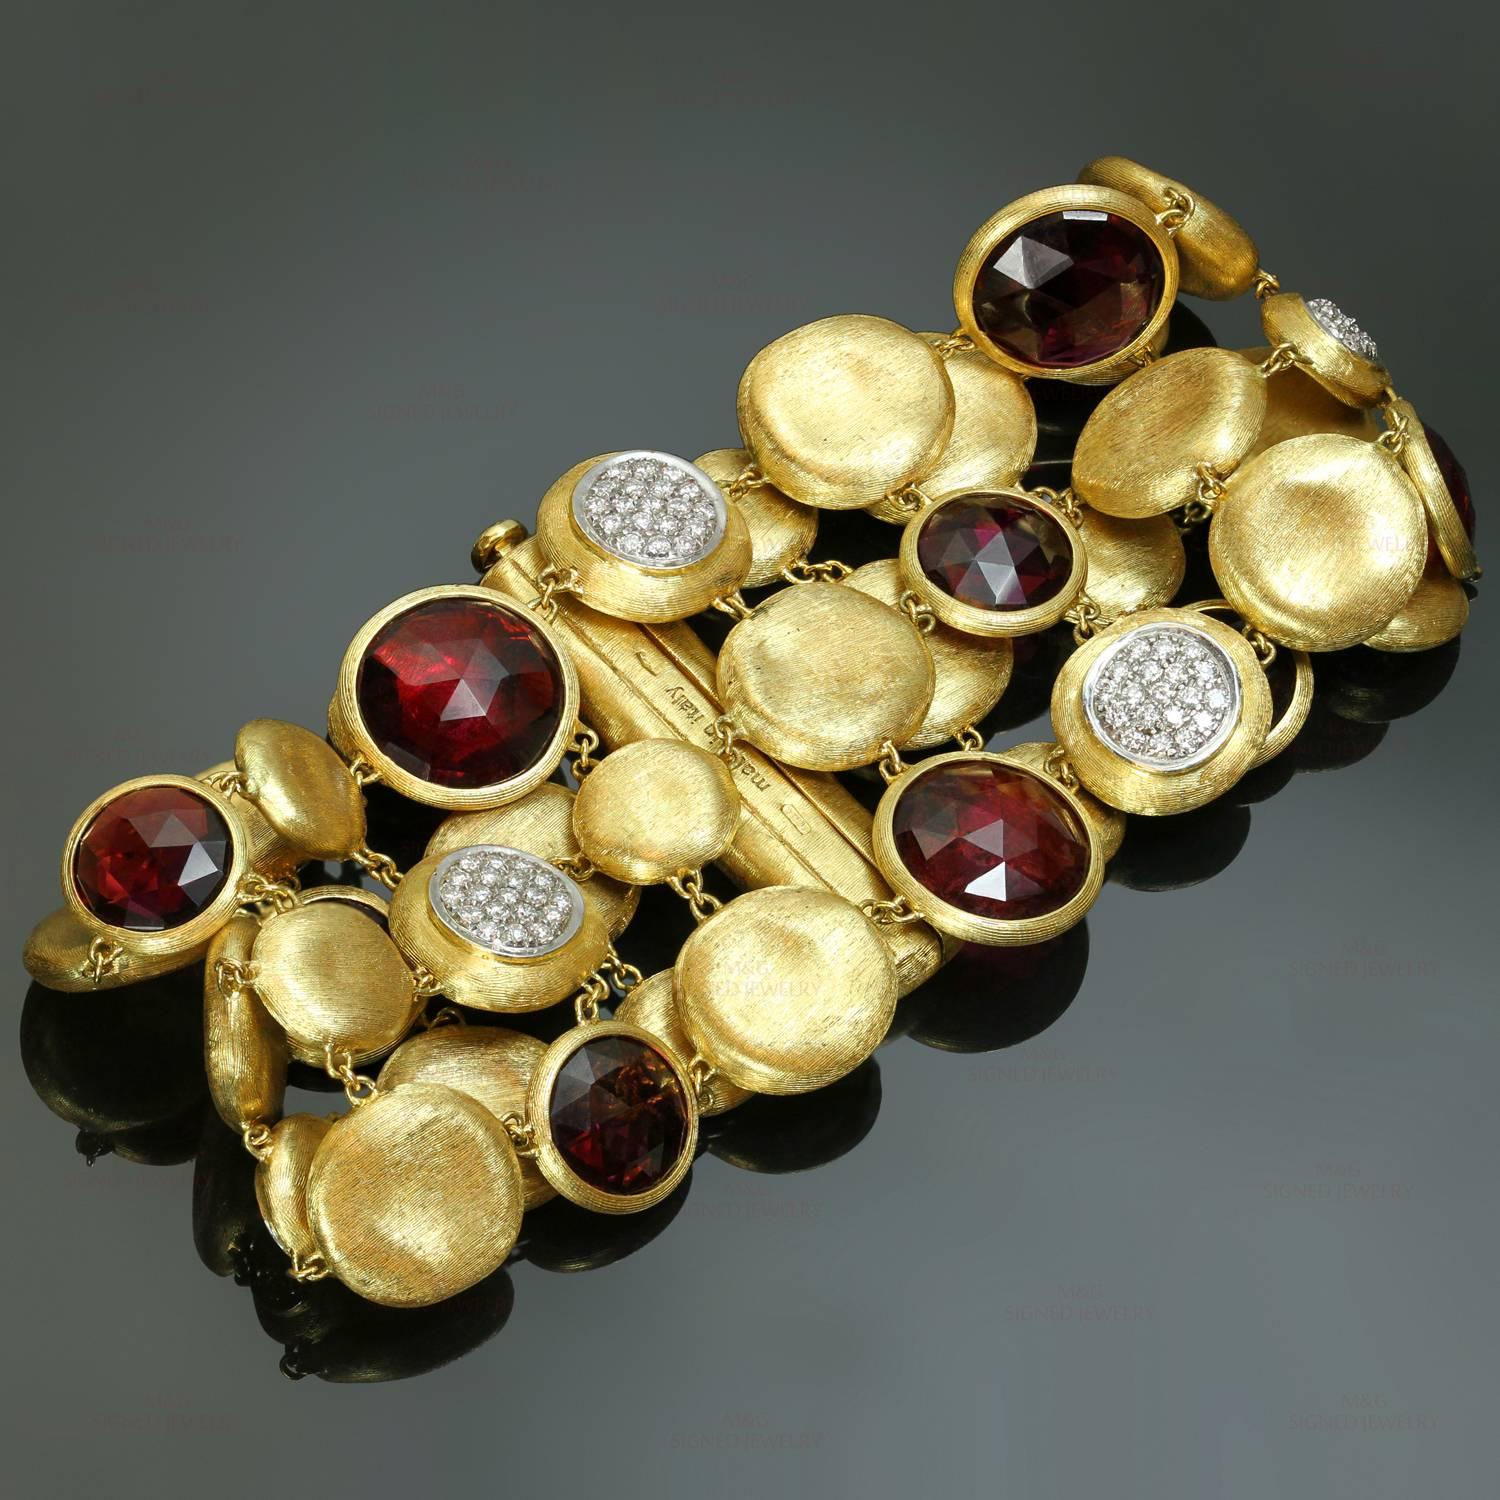 Dieses raffinierte Armband von Marco Bicego aus der Jaipur Diamonds Kollektion zeichnet sich durch drei Reihen aus handgemeißeltem, gebürstetem 18-karätigem Gelbgold aus, die an organisch strukturierte Kieselsteine erinnern. Dazu gesellen sich